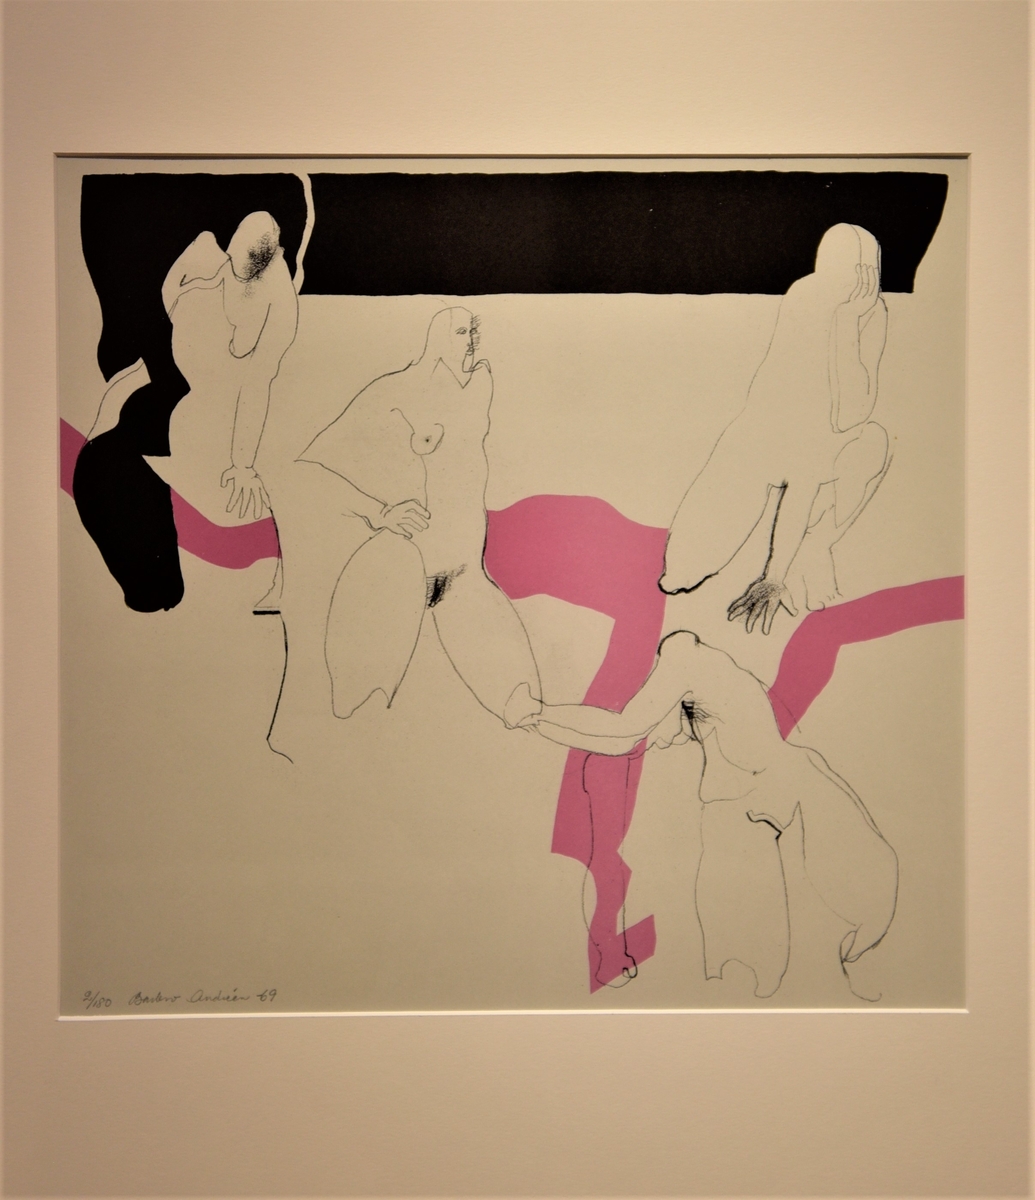 Mot vitgrå bakgrund syns fyra stiliserade kvinnofigurer, konturtecknade. Överst löper ett brett horisontalt band med ett utskott nedåt till vänster; ett annat band i rosa går horisontalt genom bildens mitt.